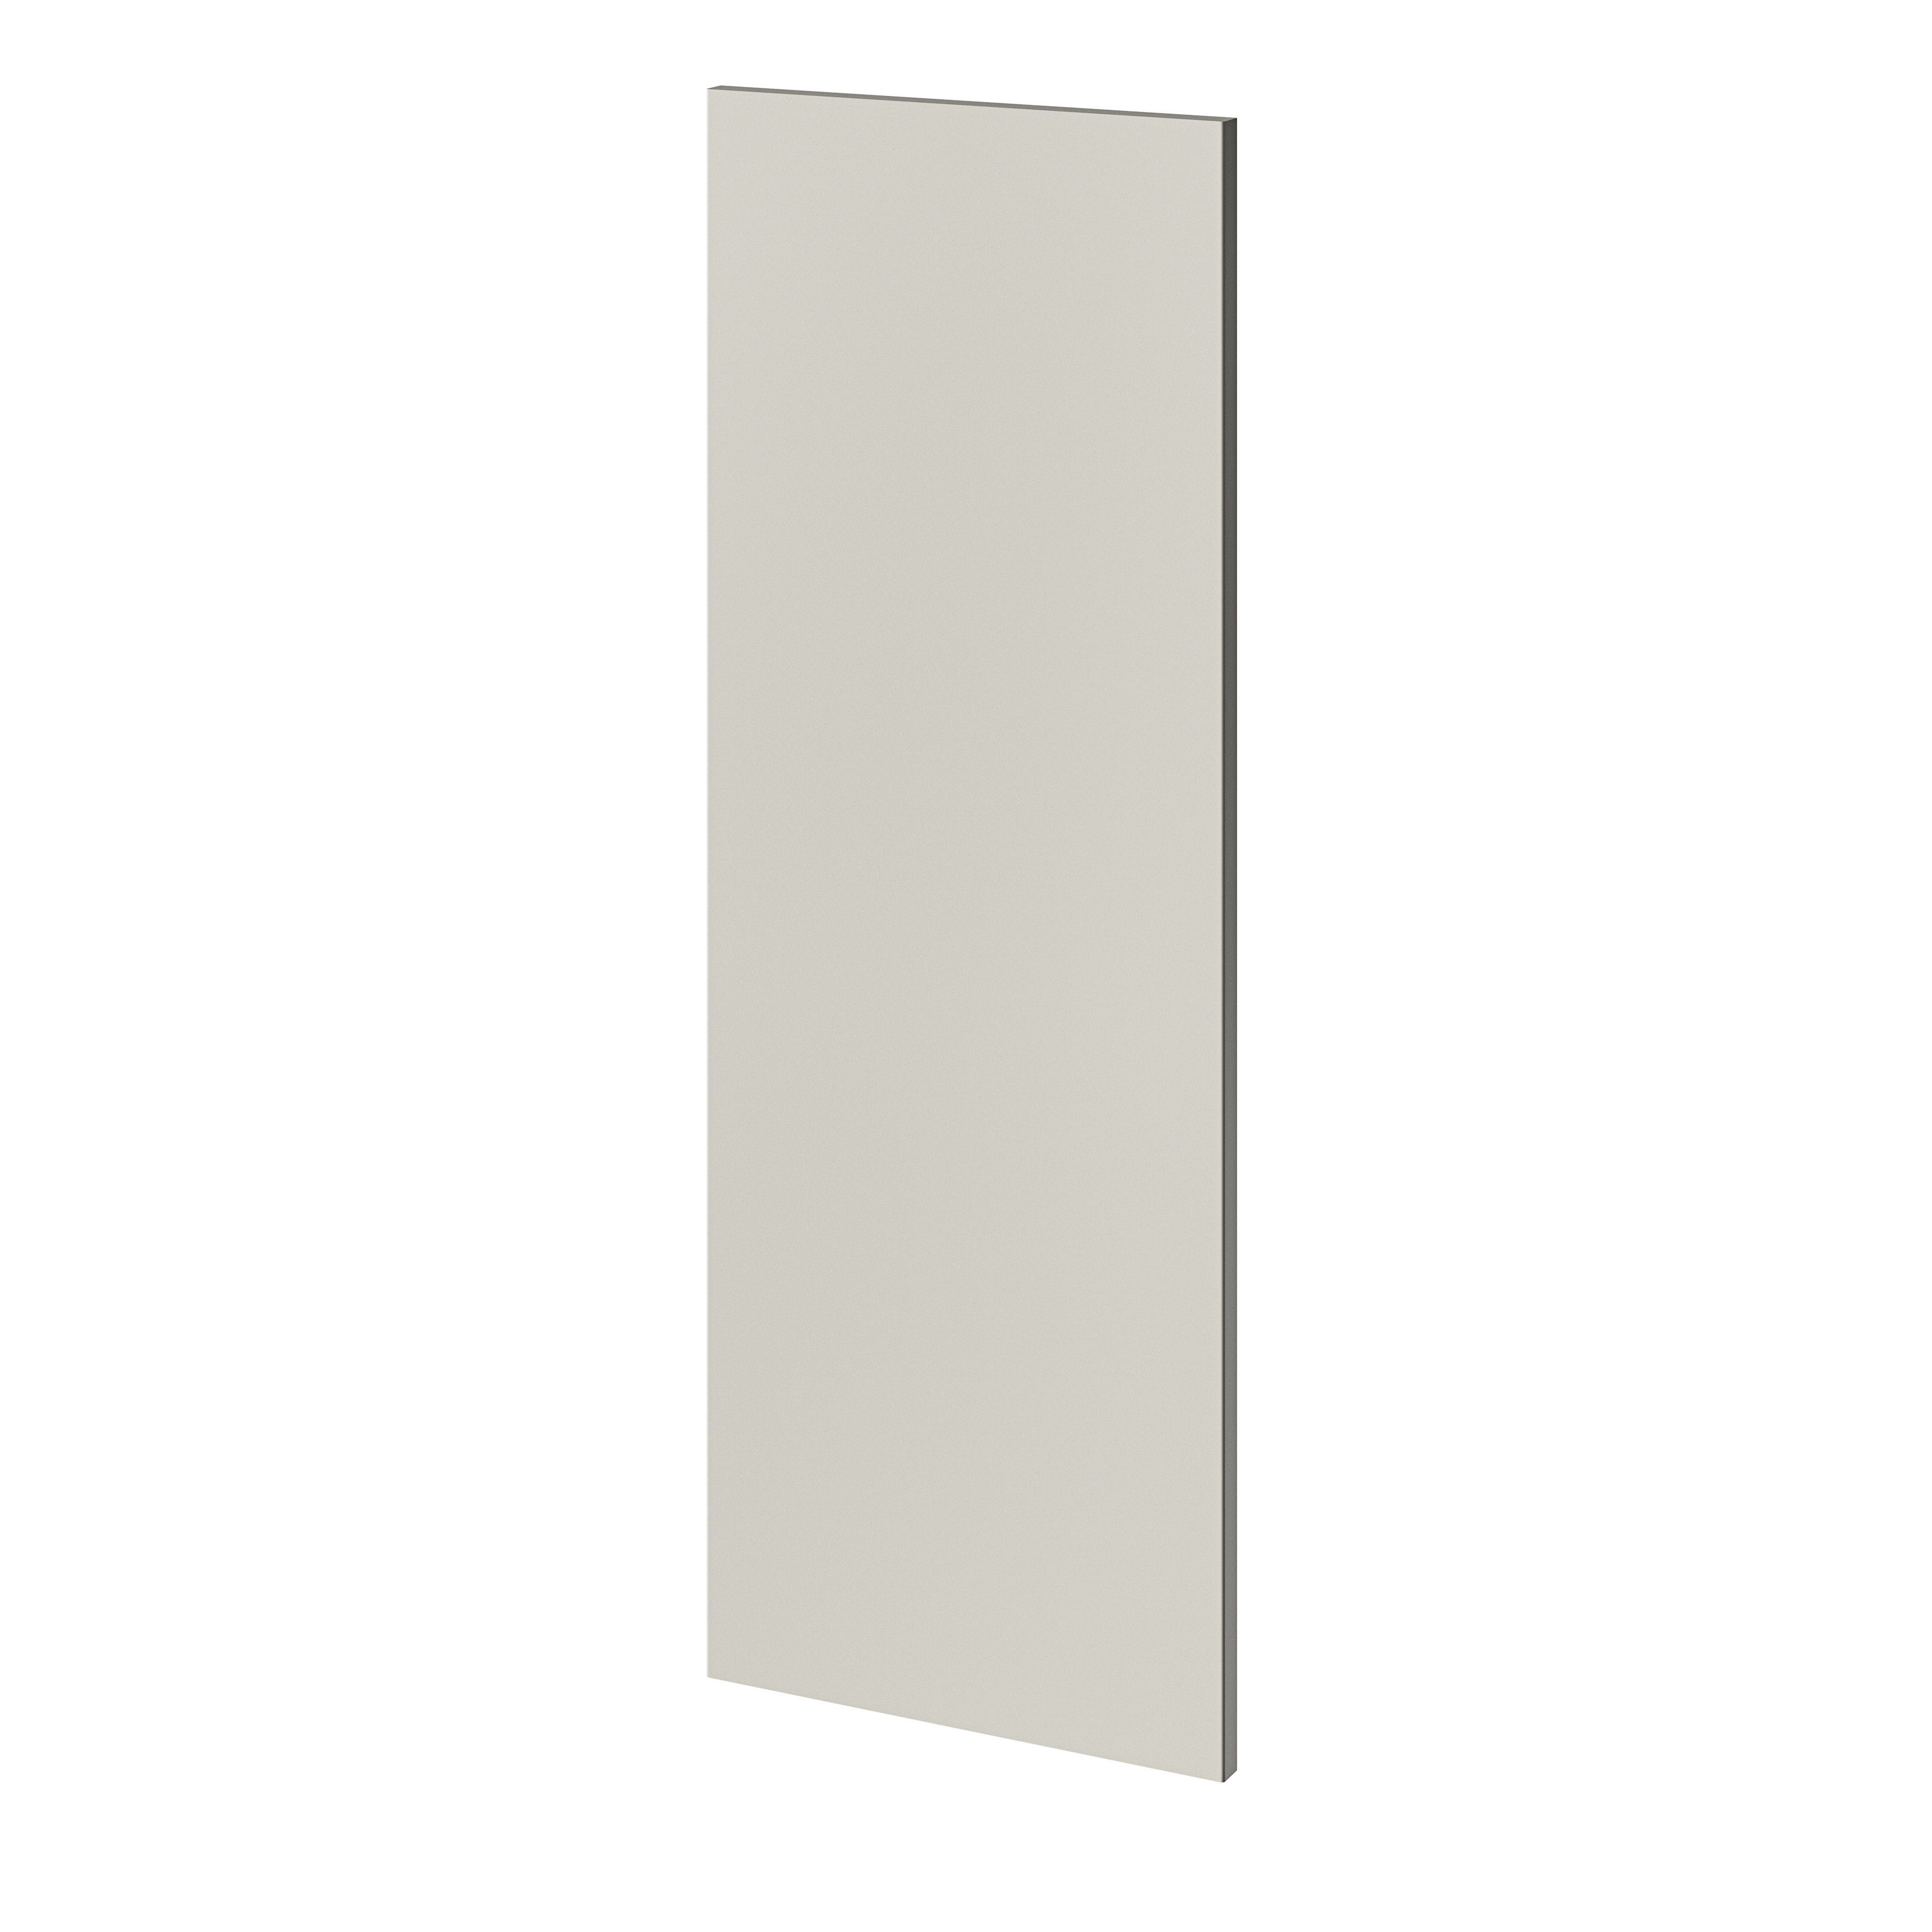 GoodHome Stevia Matt sandstone slab Tall Wall End panel (H)900mm (W)320mm